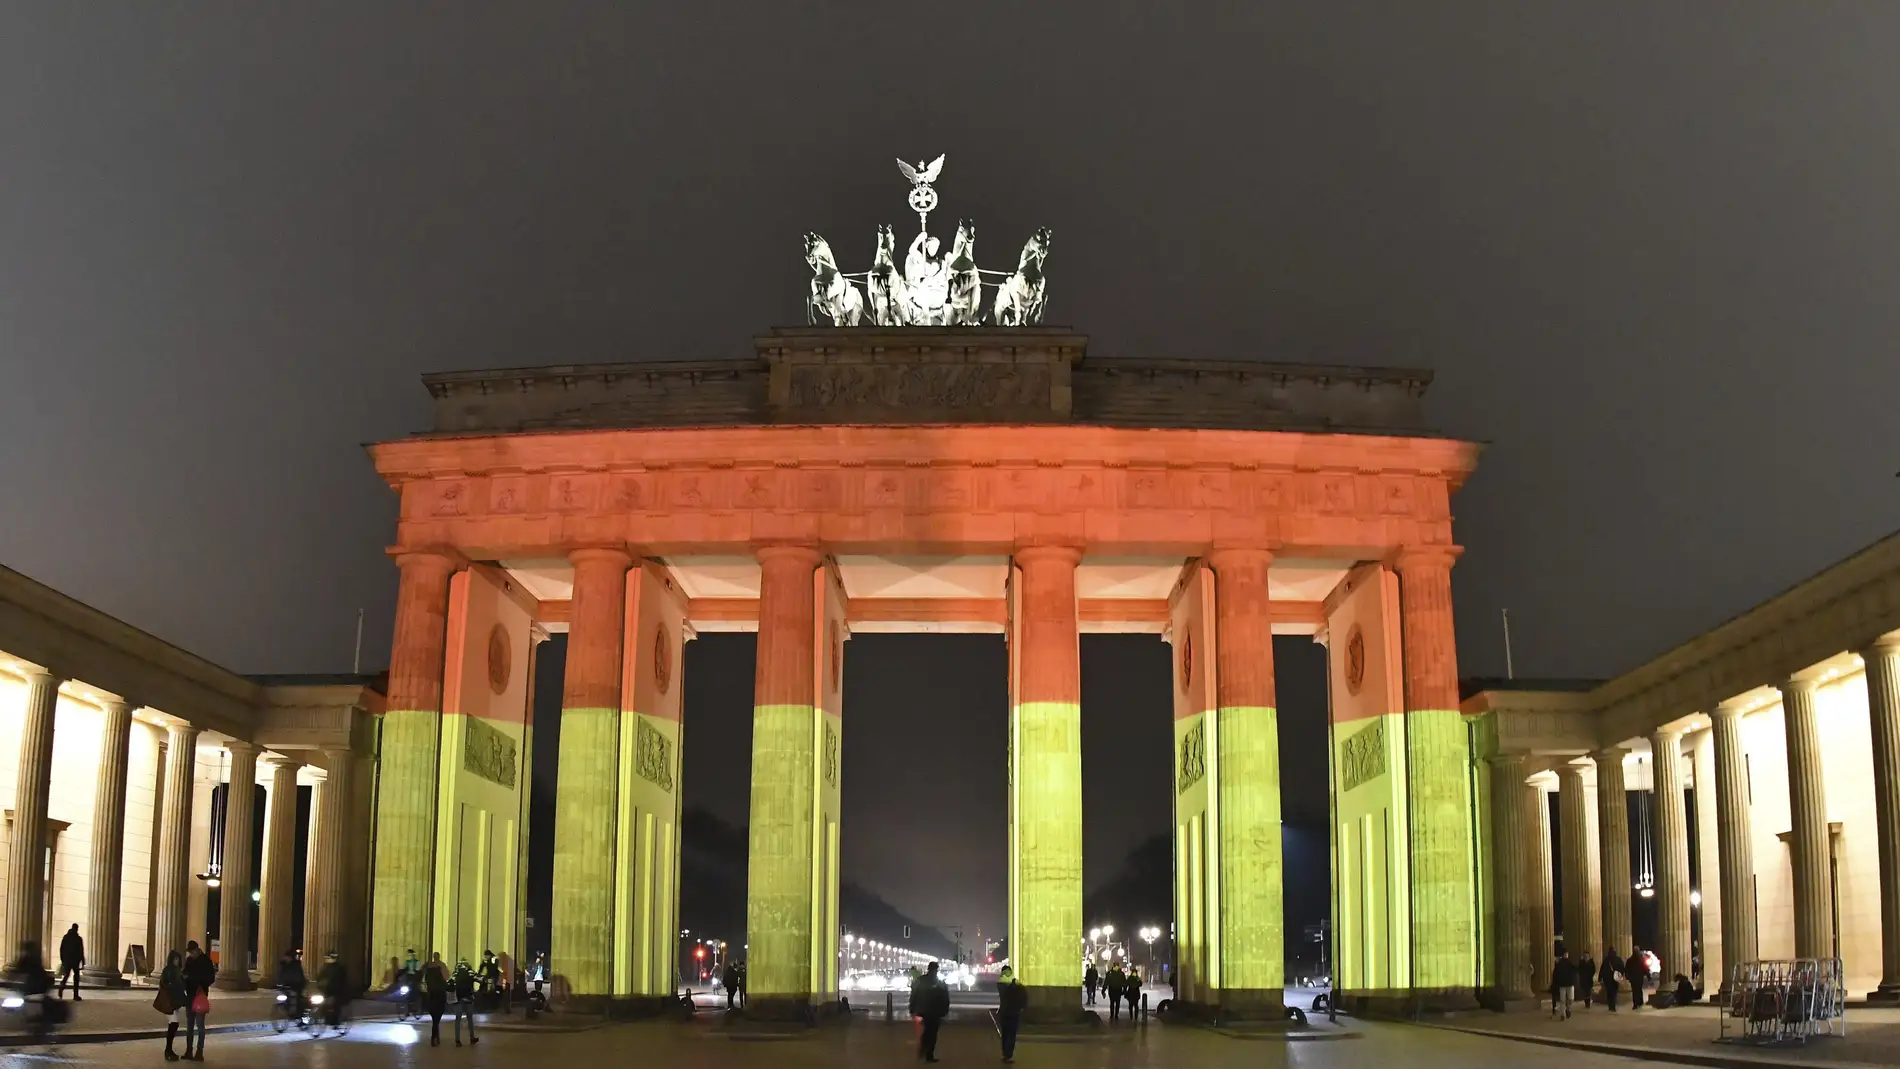 Puerta de Brandenburgo con los colores de la bandera nacional